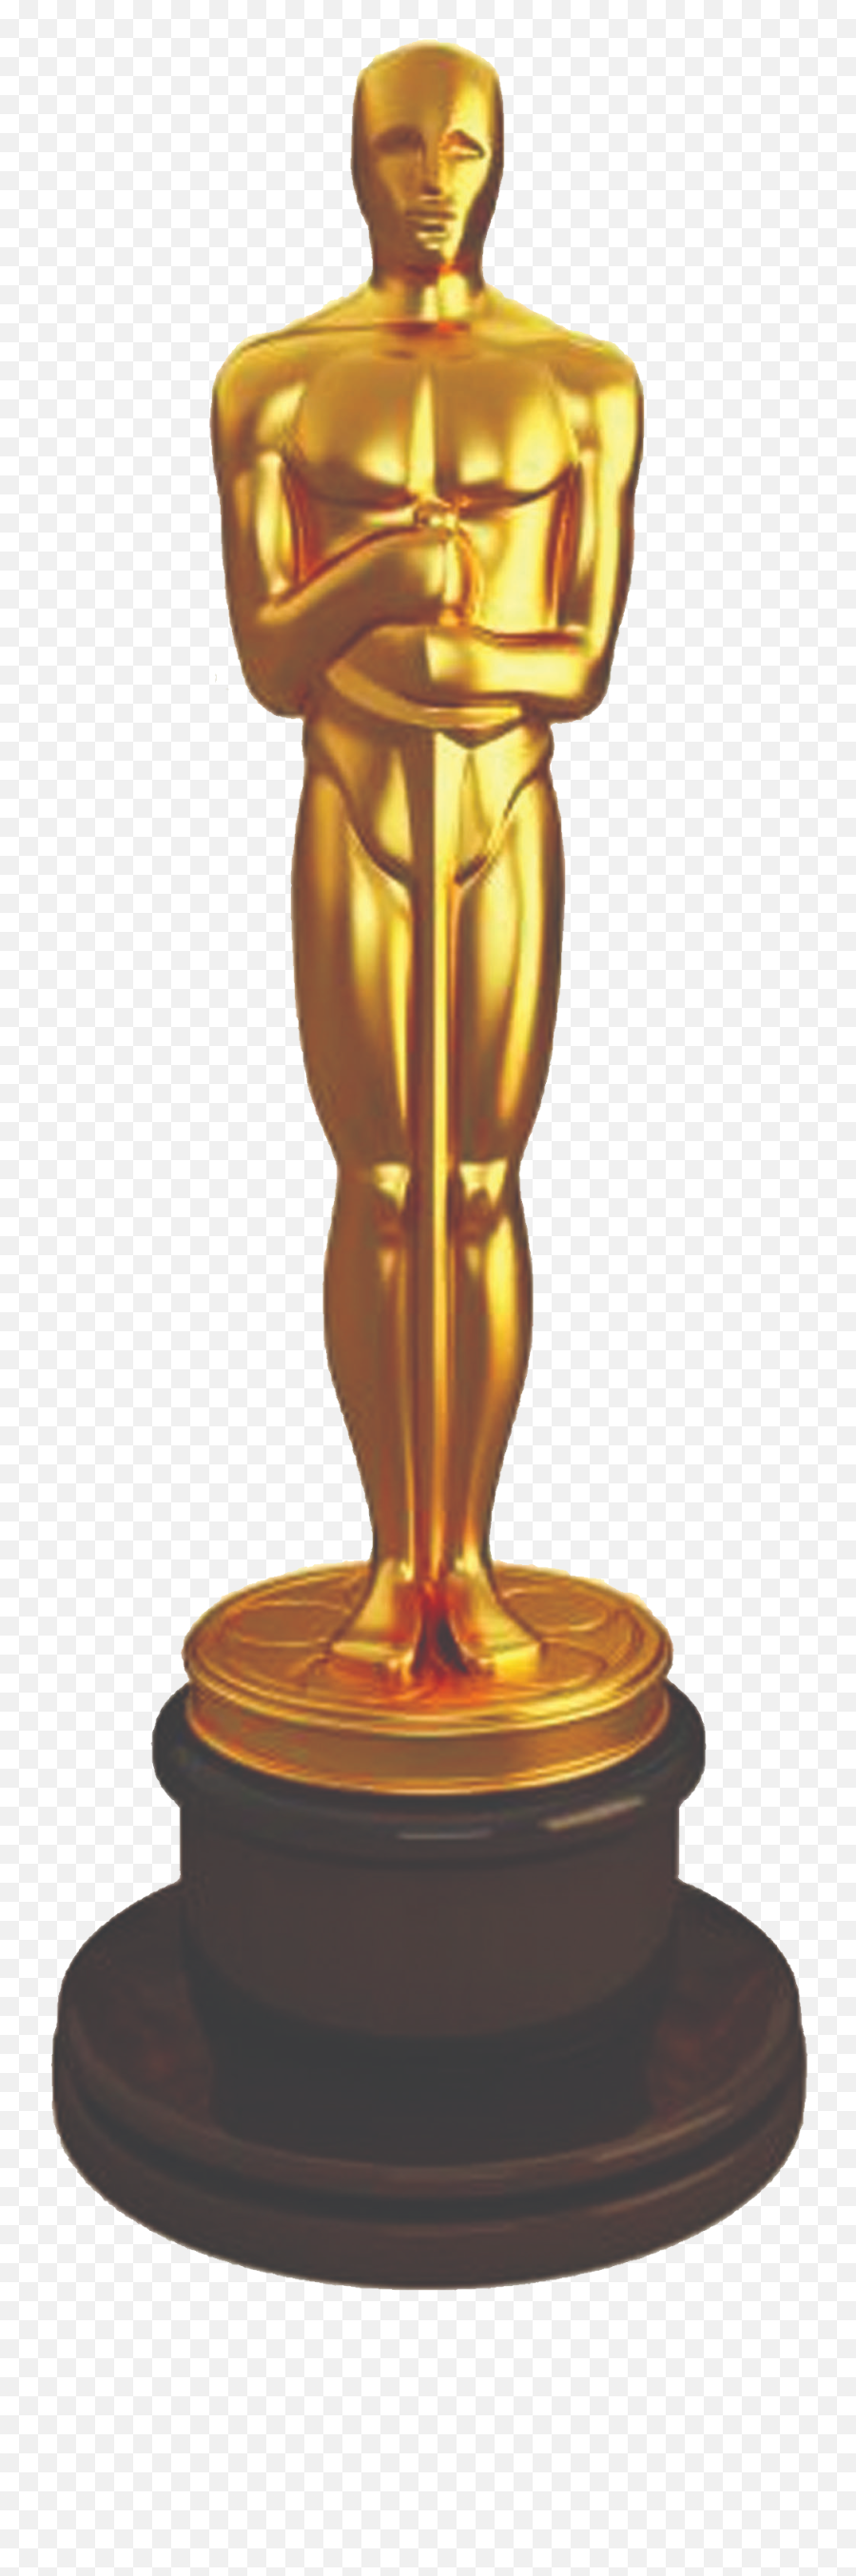 Academy Awards Png The Oscars Oscar Trophy